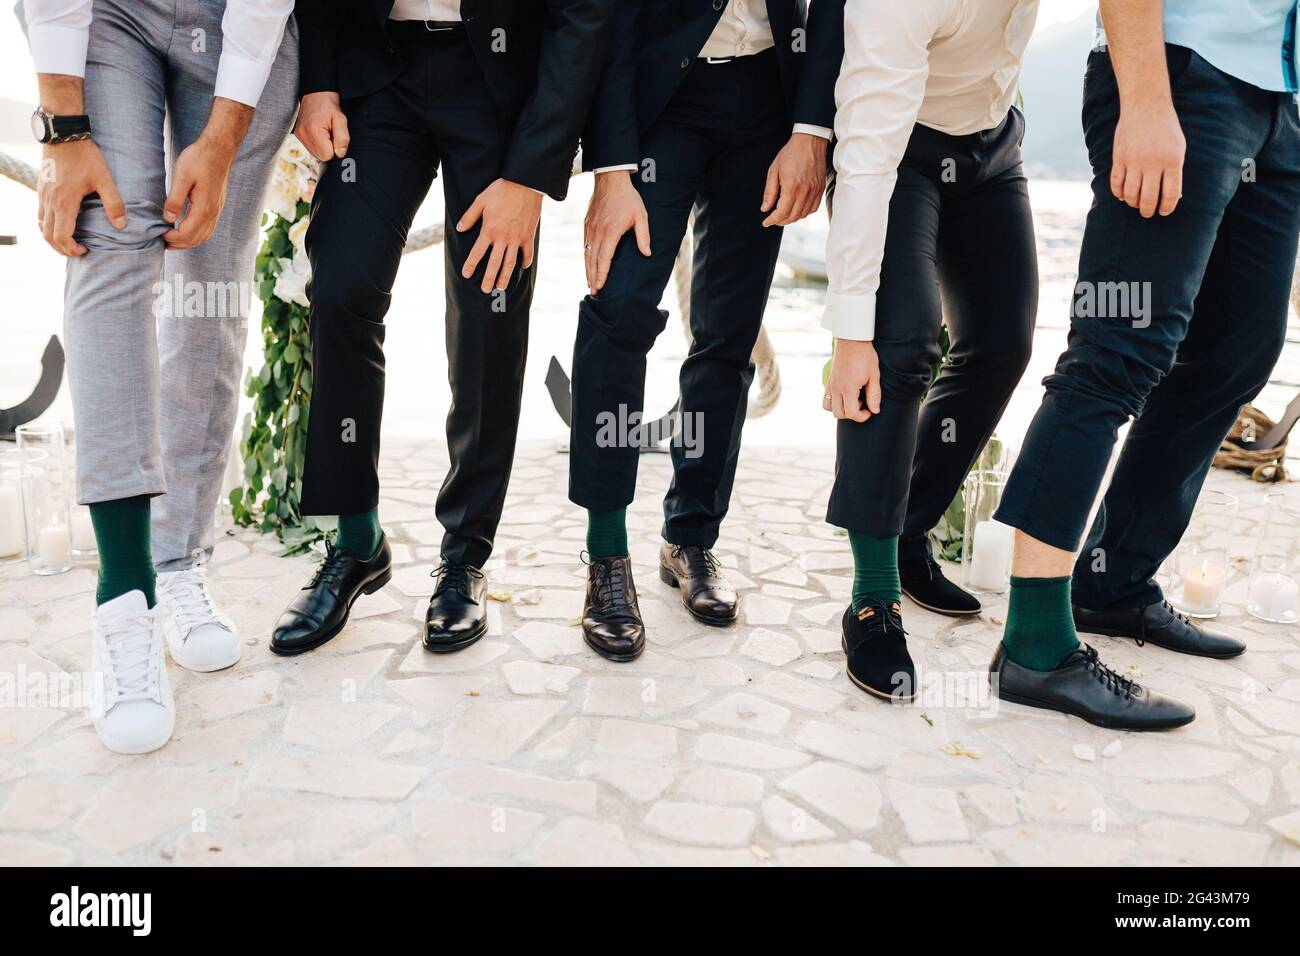 Lo sposo e i migliori uomini mostrano che indossano le stesse calze verdi Foto Stock